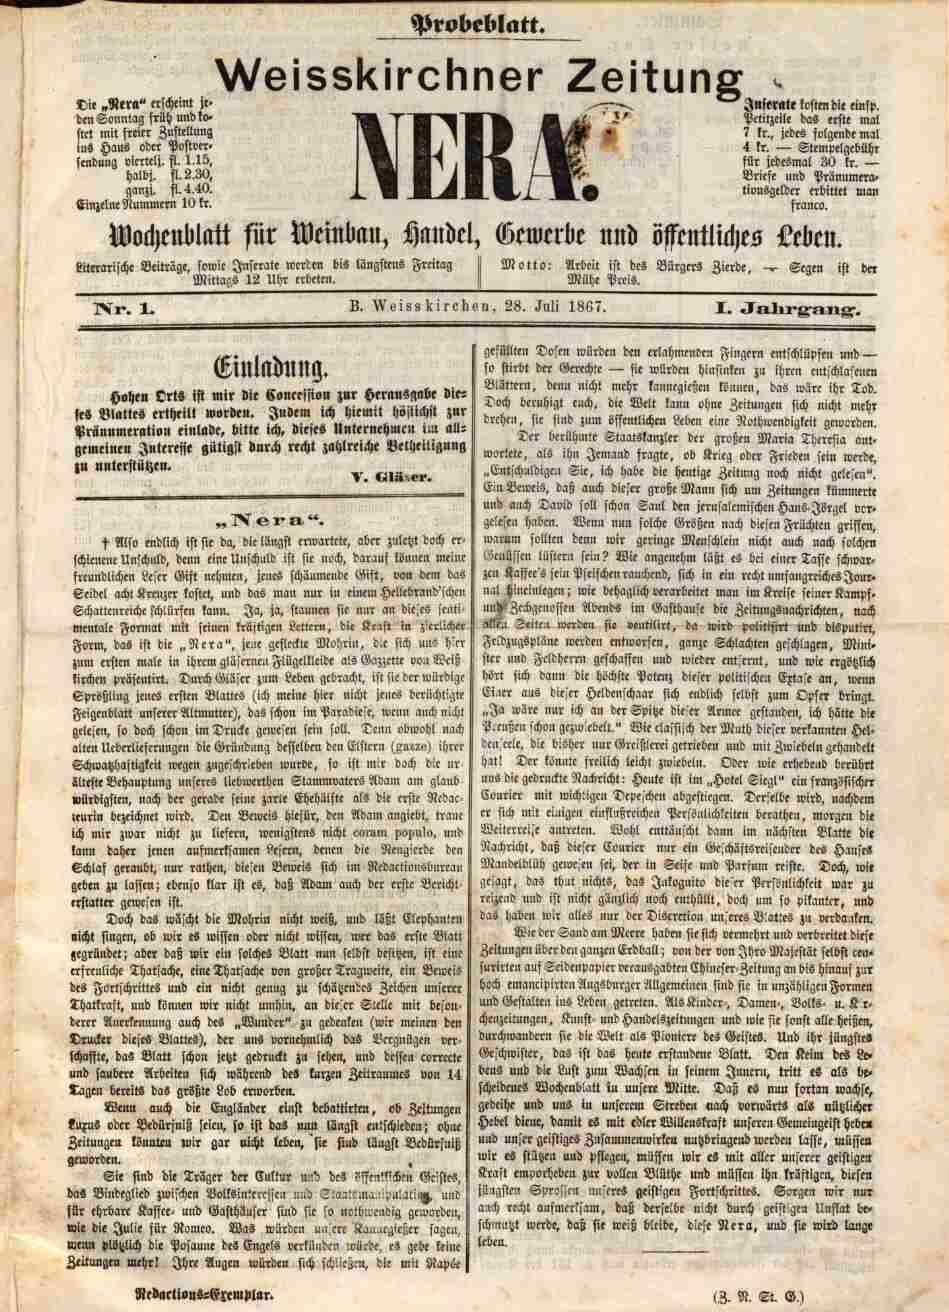 Weißkirchner Zeitung Nera, 28.7.1867, S.1, ANNO/ÖNB